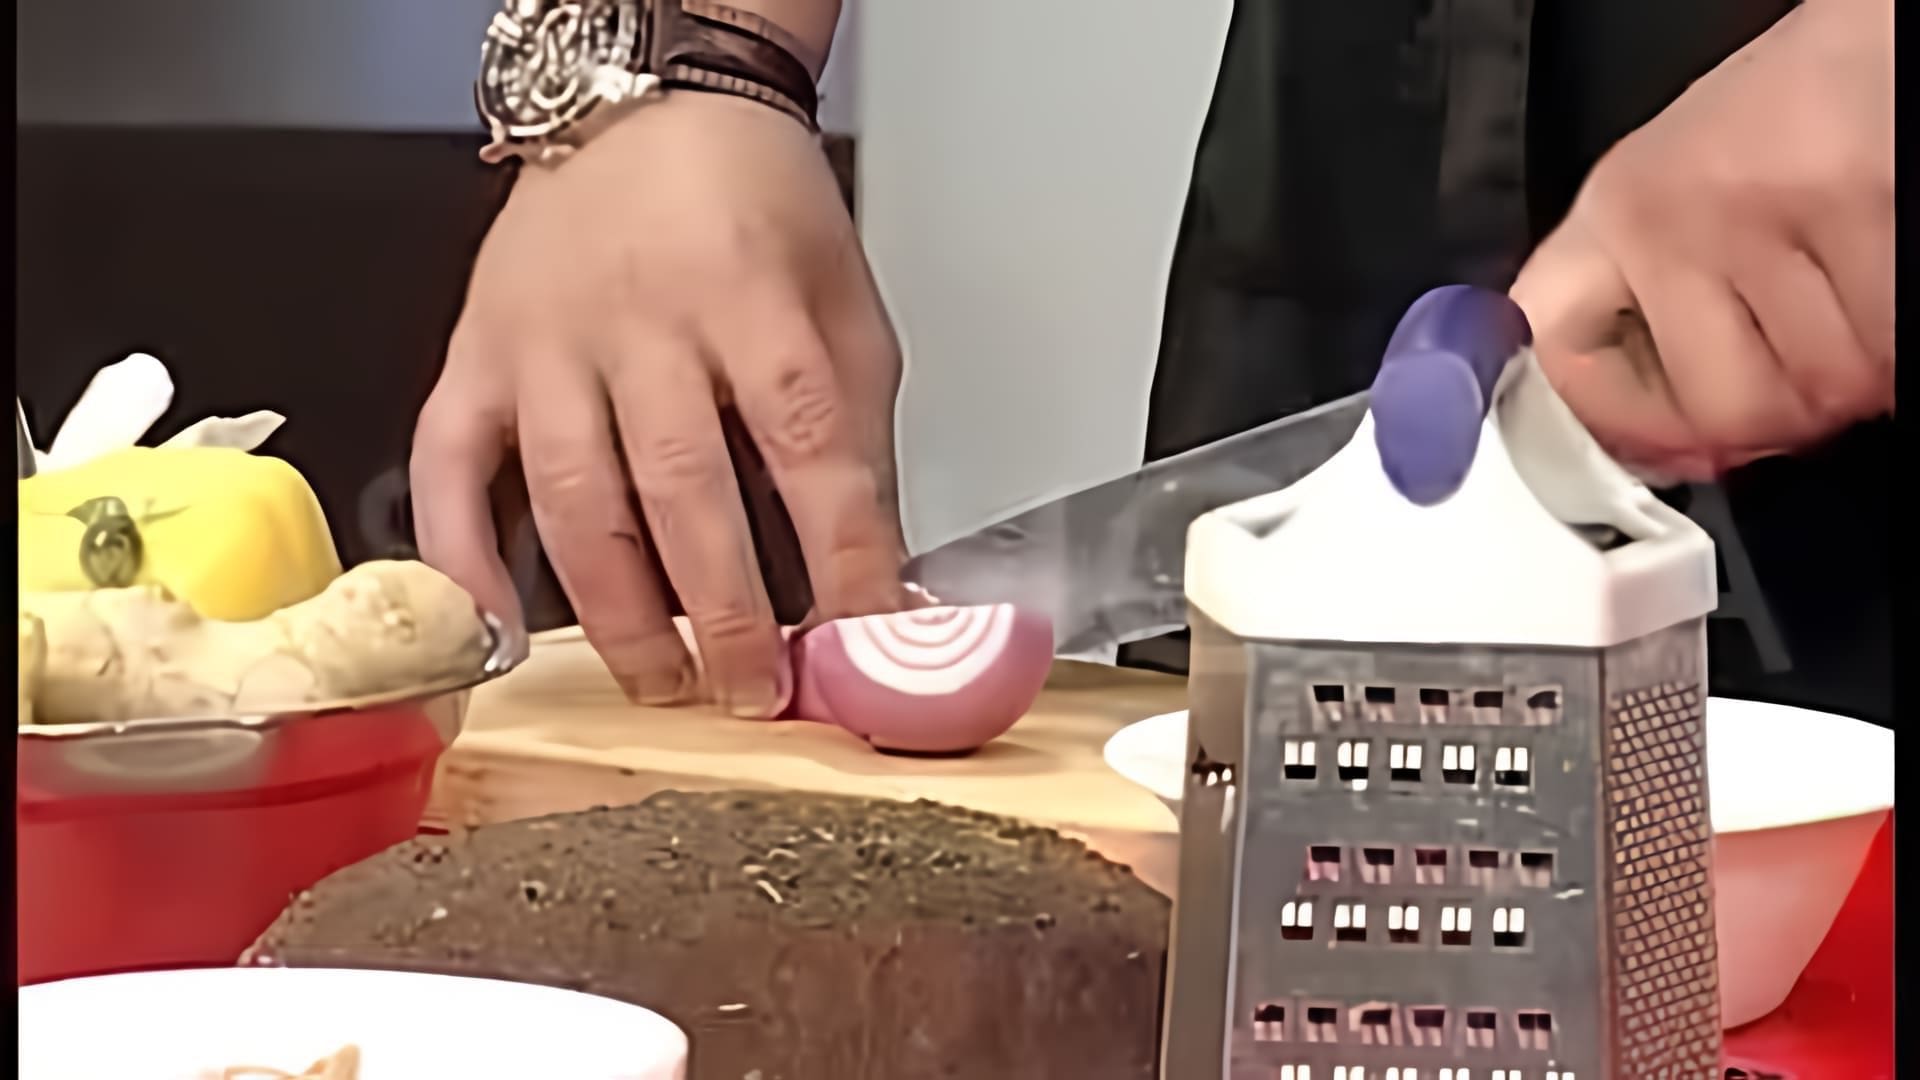 В этом видео демонстрируется процесс приготовления чатни - индийского соуса, который можно использовать как дополнение к различным блюдам